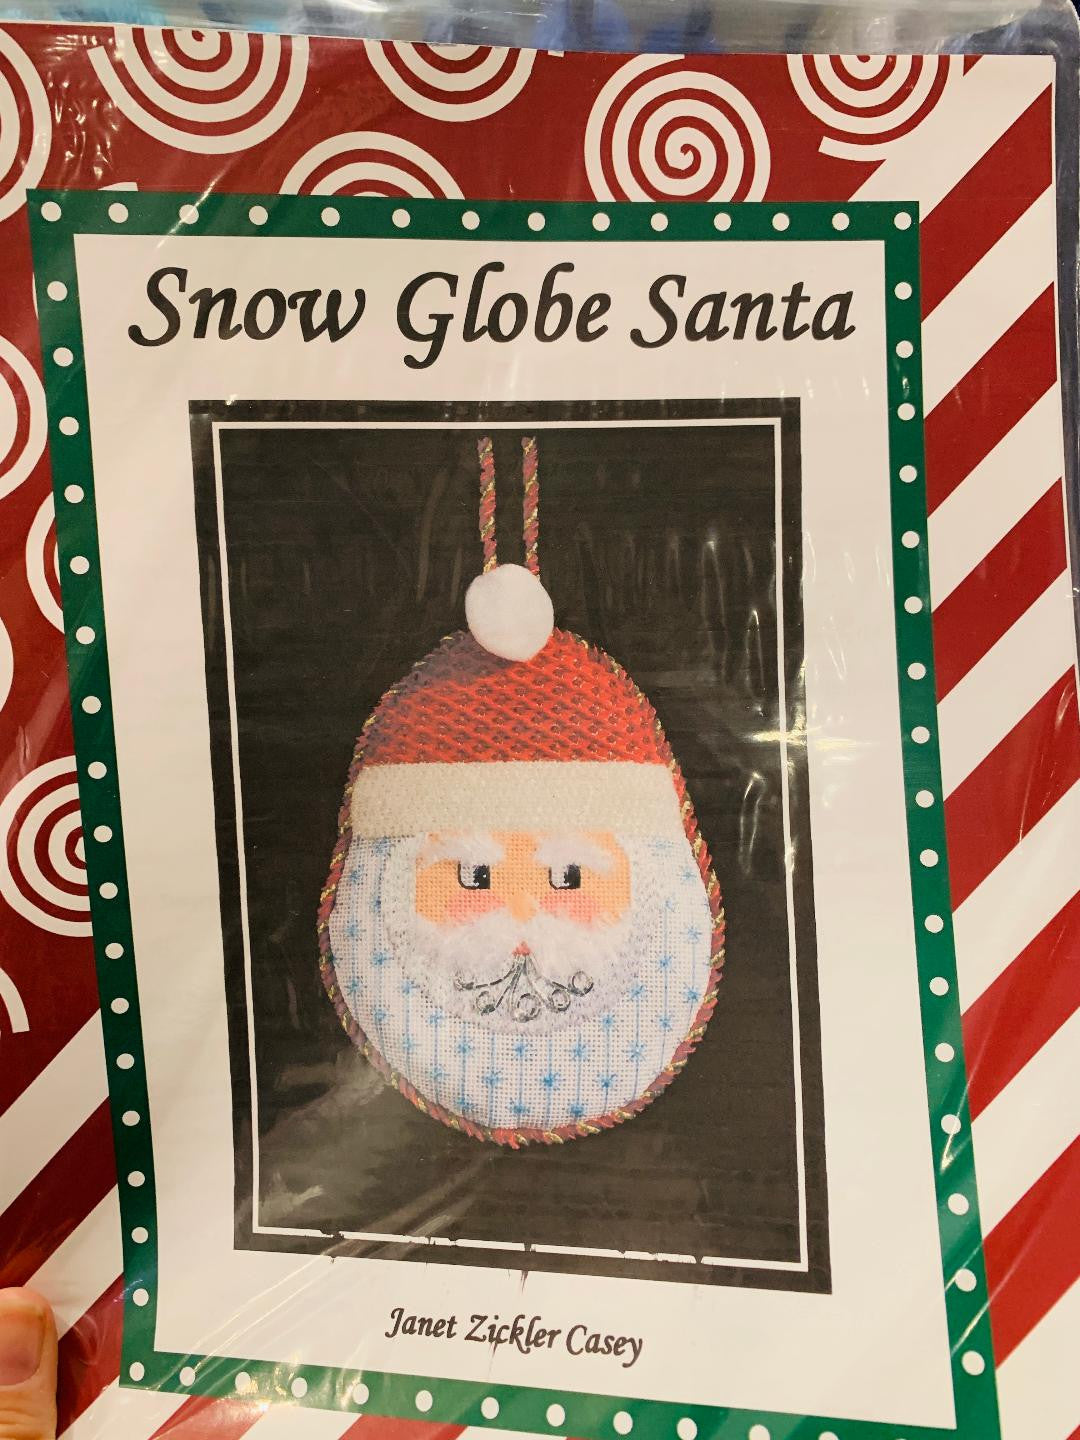 JC-06 Snow Globe Santa with Stitch Guide